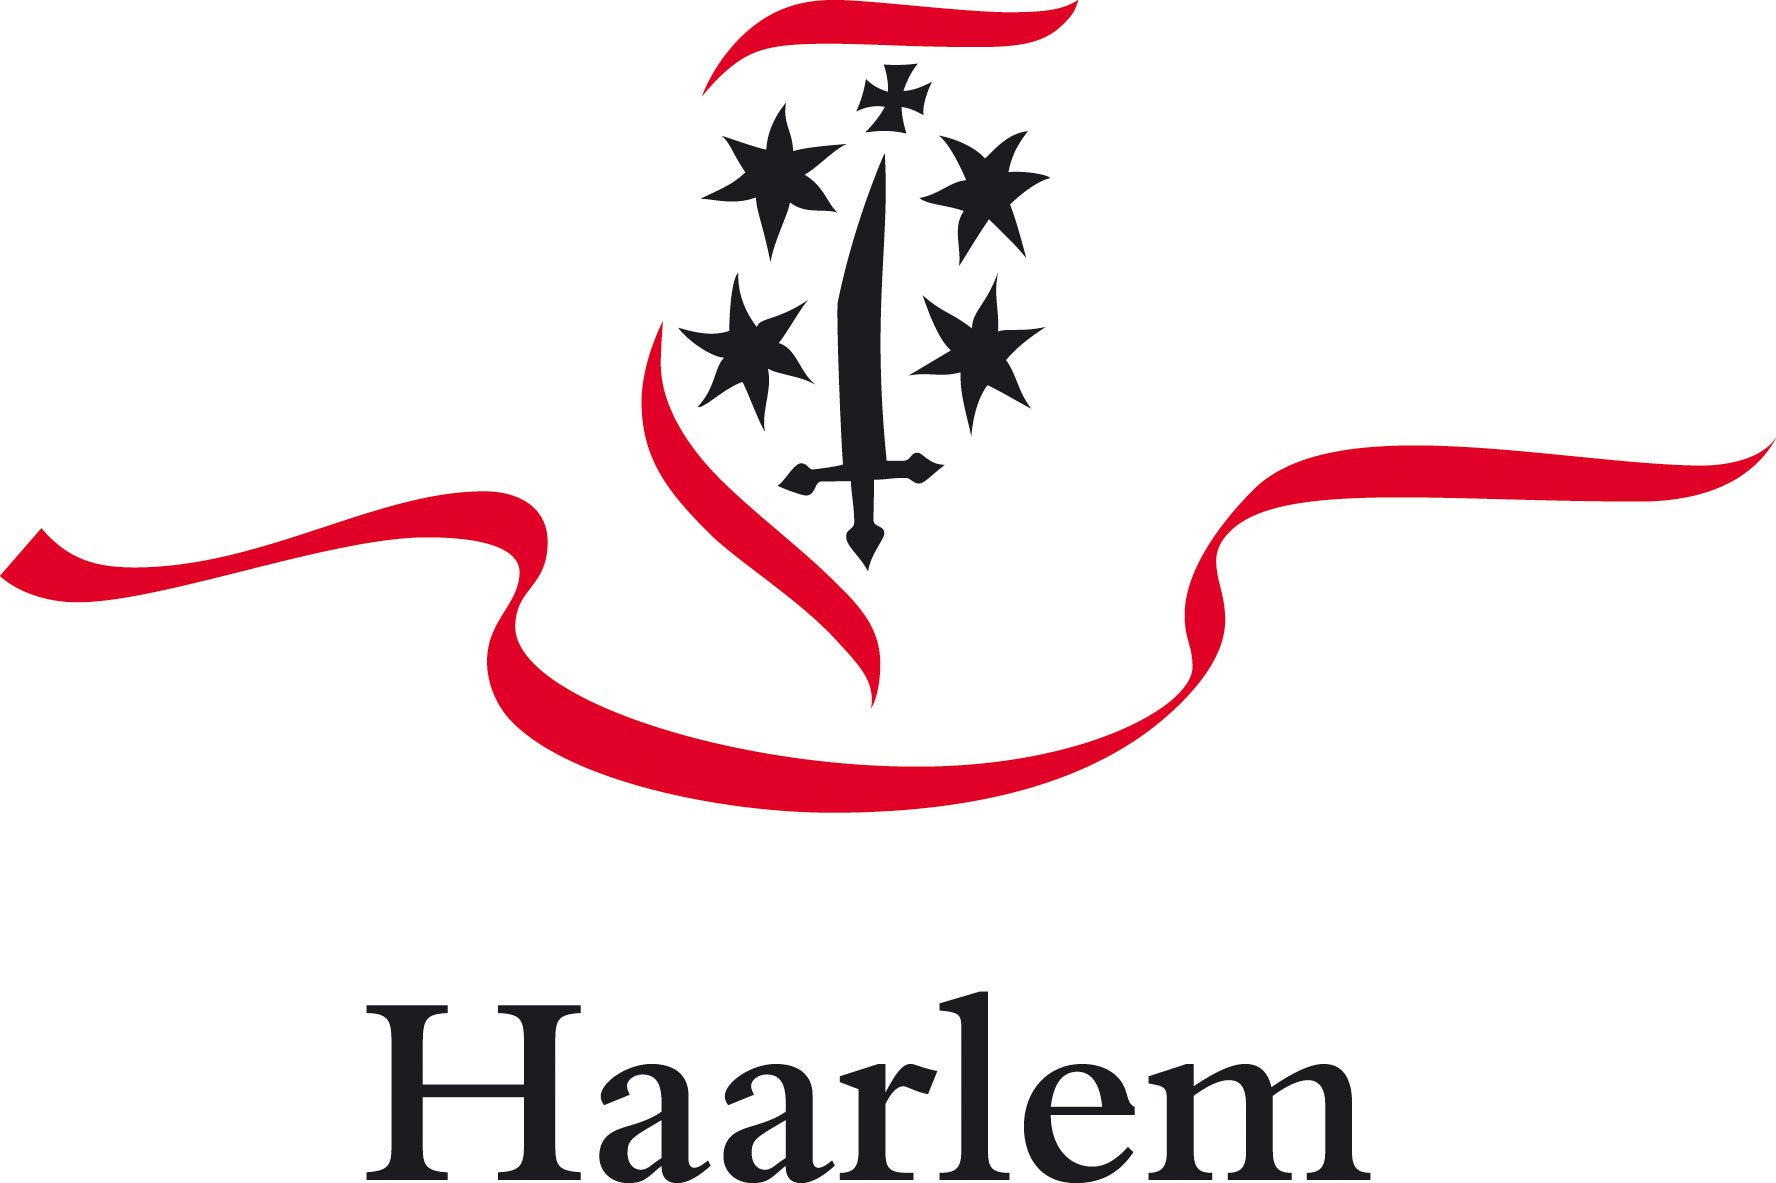 Gemeente Haarlem